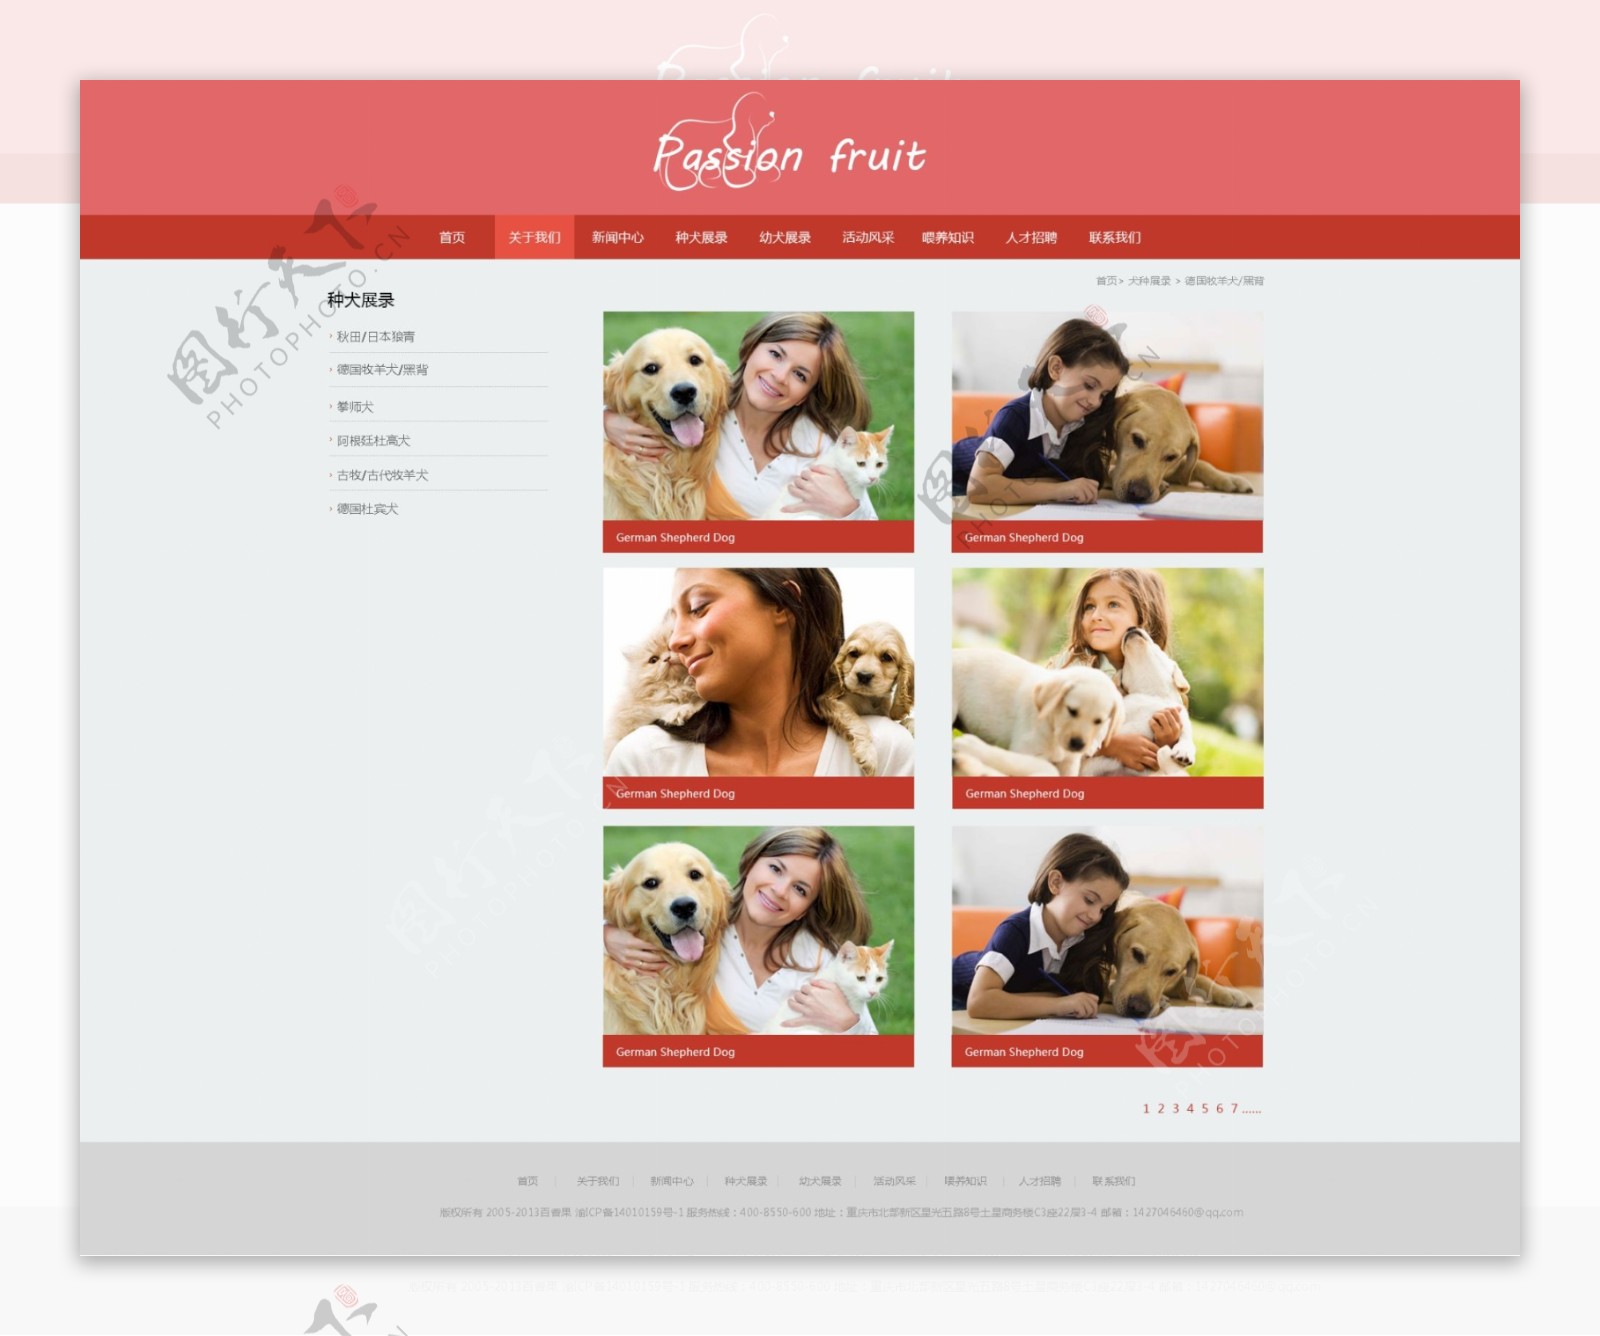 宠物网站模板设计产品列表页PSD源文件